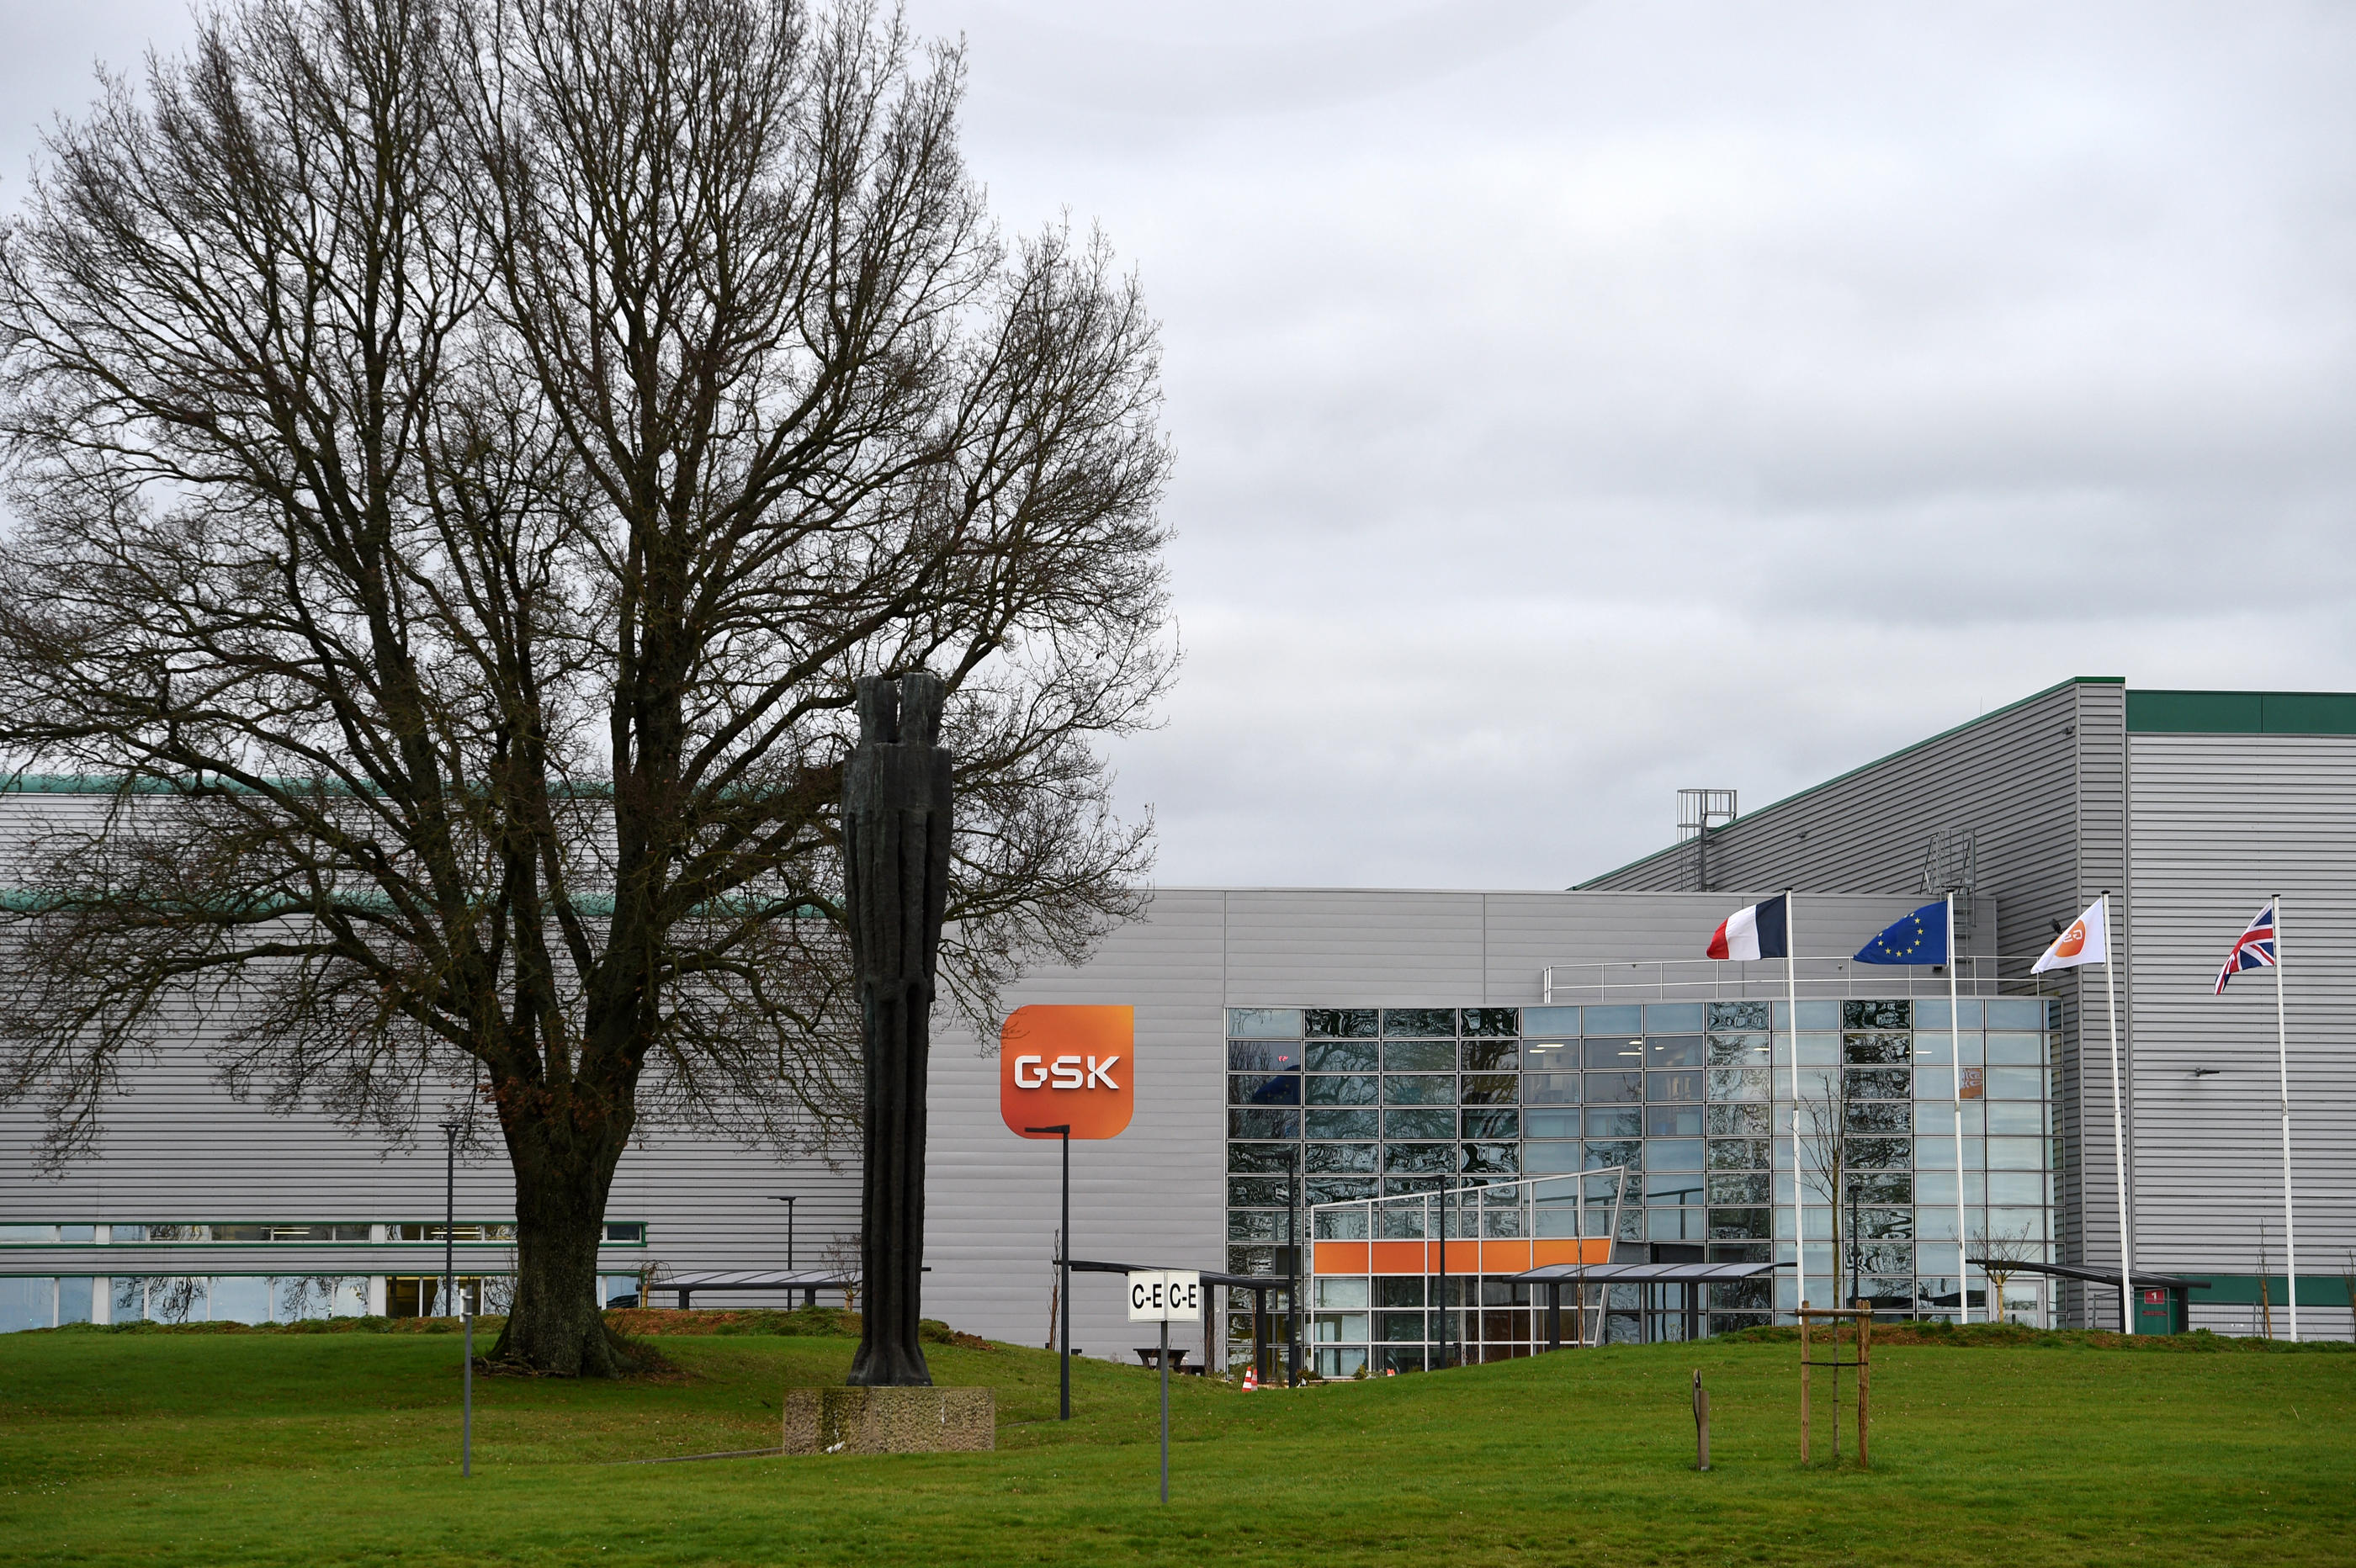 Le groupe britannique pharmaceutique GSK, qui dispose de trois usines en France, va investir plus de 240 millions d’euros dans celle située à Mayenne. AFP/Jean-François Monier